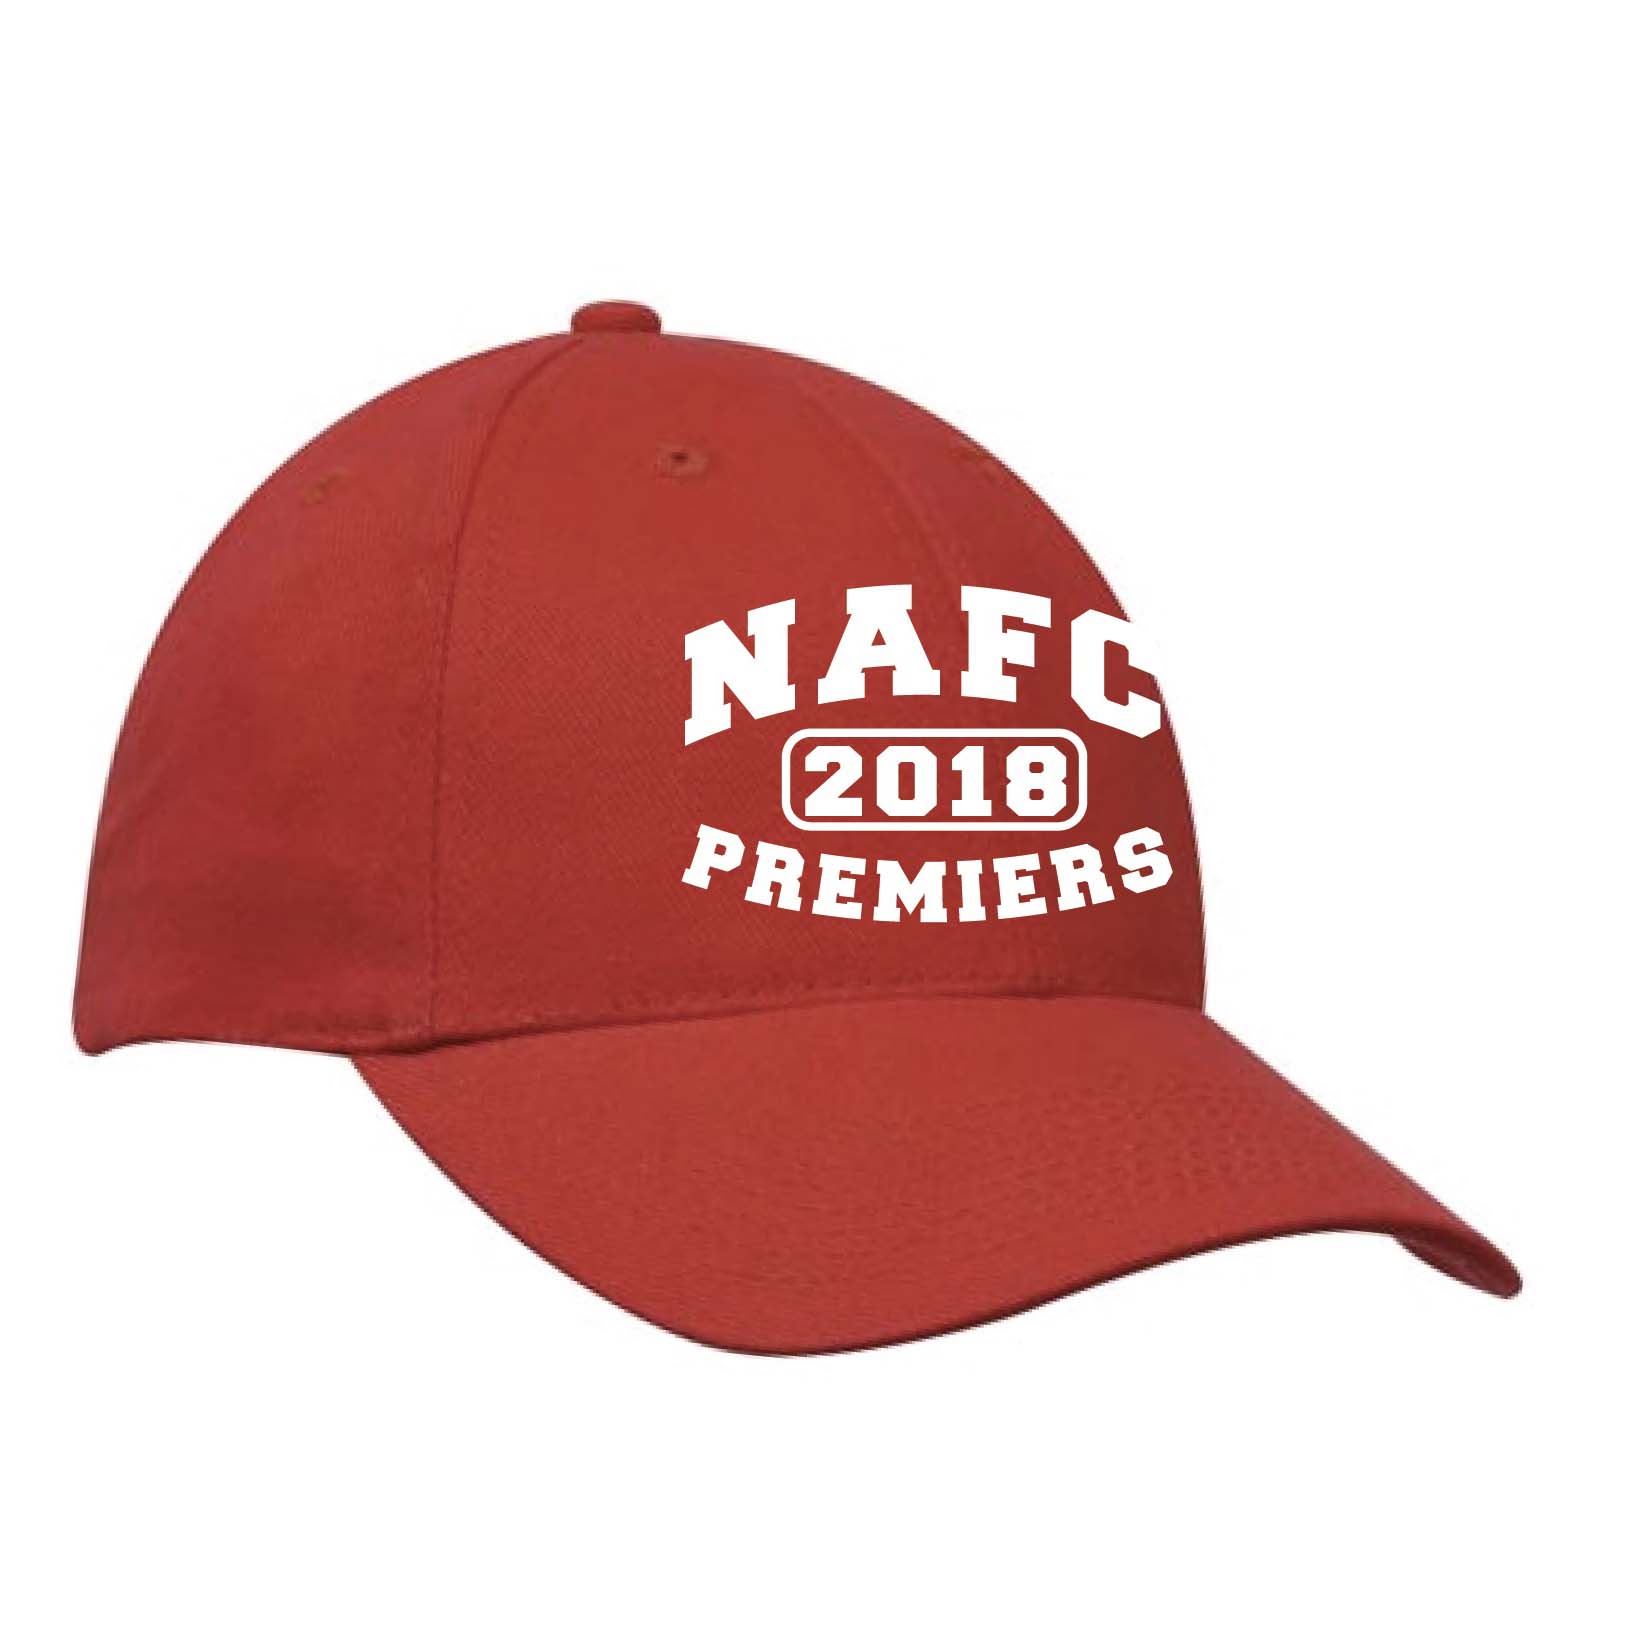 NAFC PREMIERS CAP